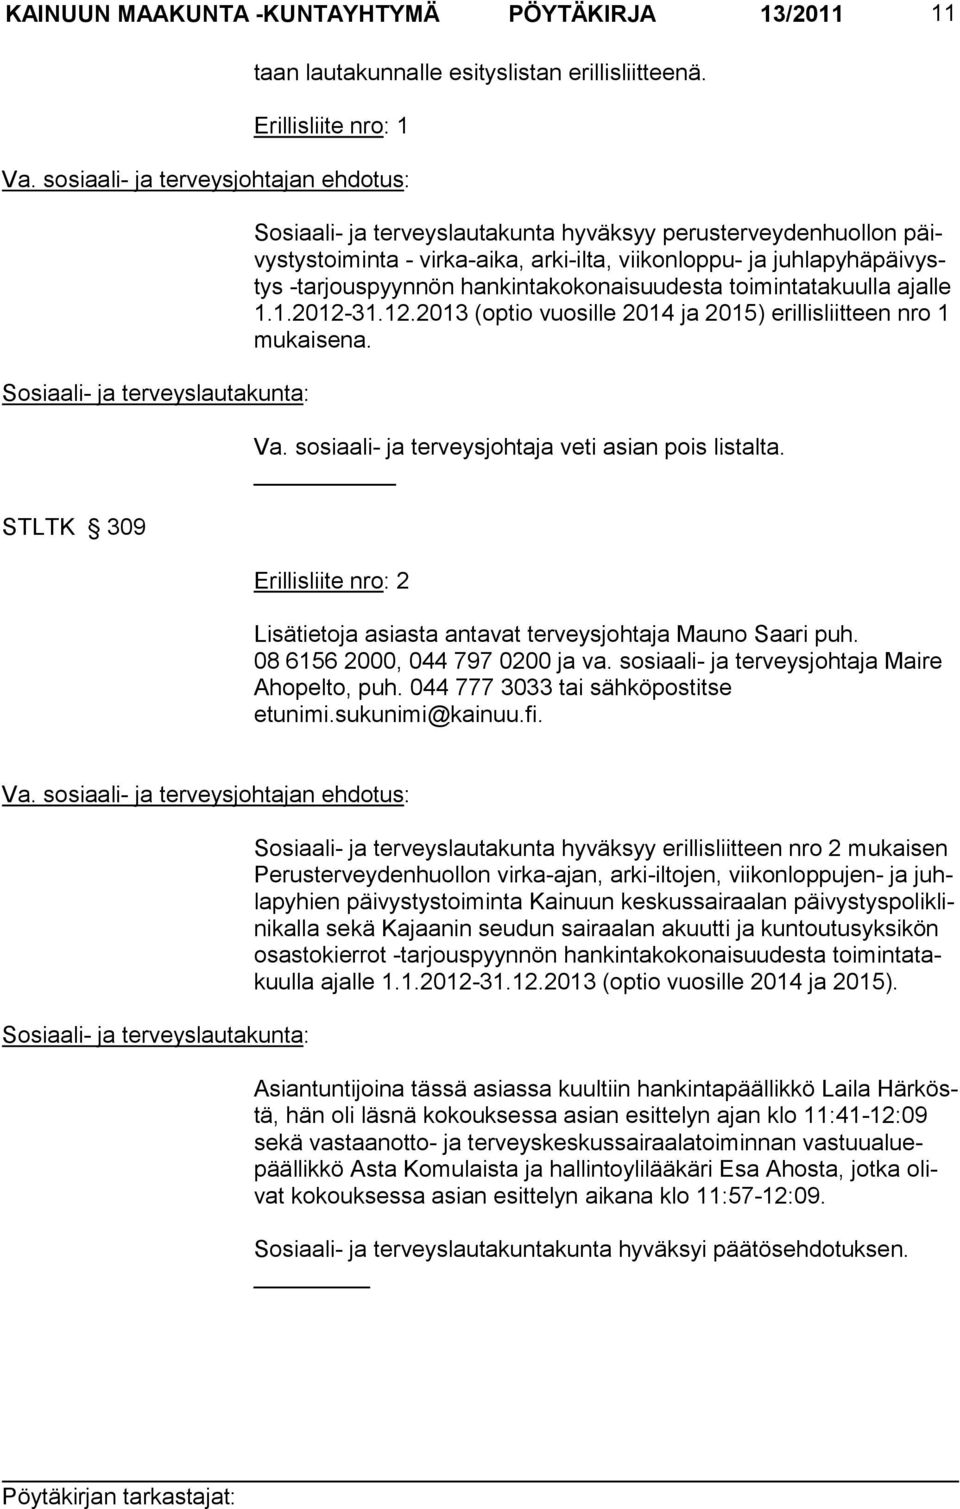 ja juhlapyhäpäivystys -tarjouspyynnön hankintakokonaisuudesta toimintatakuulla ajalle 1.1.2012-31.12.2013 (optio vuosille 2014 ja 2015) erillisliitteen nro 1 mukaisena. Va.